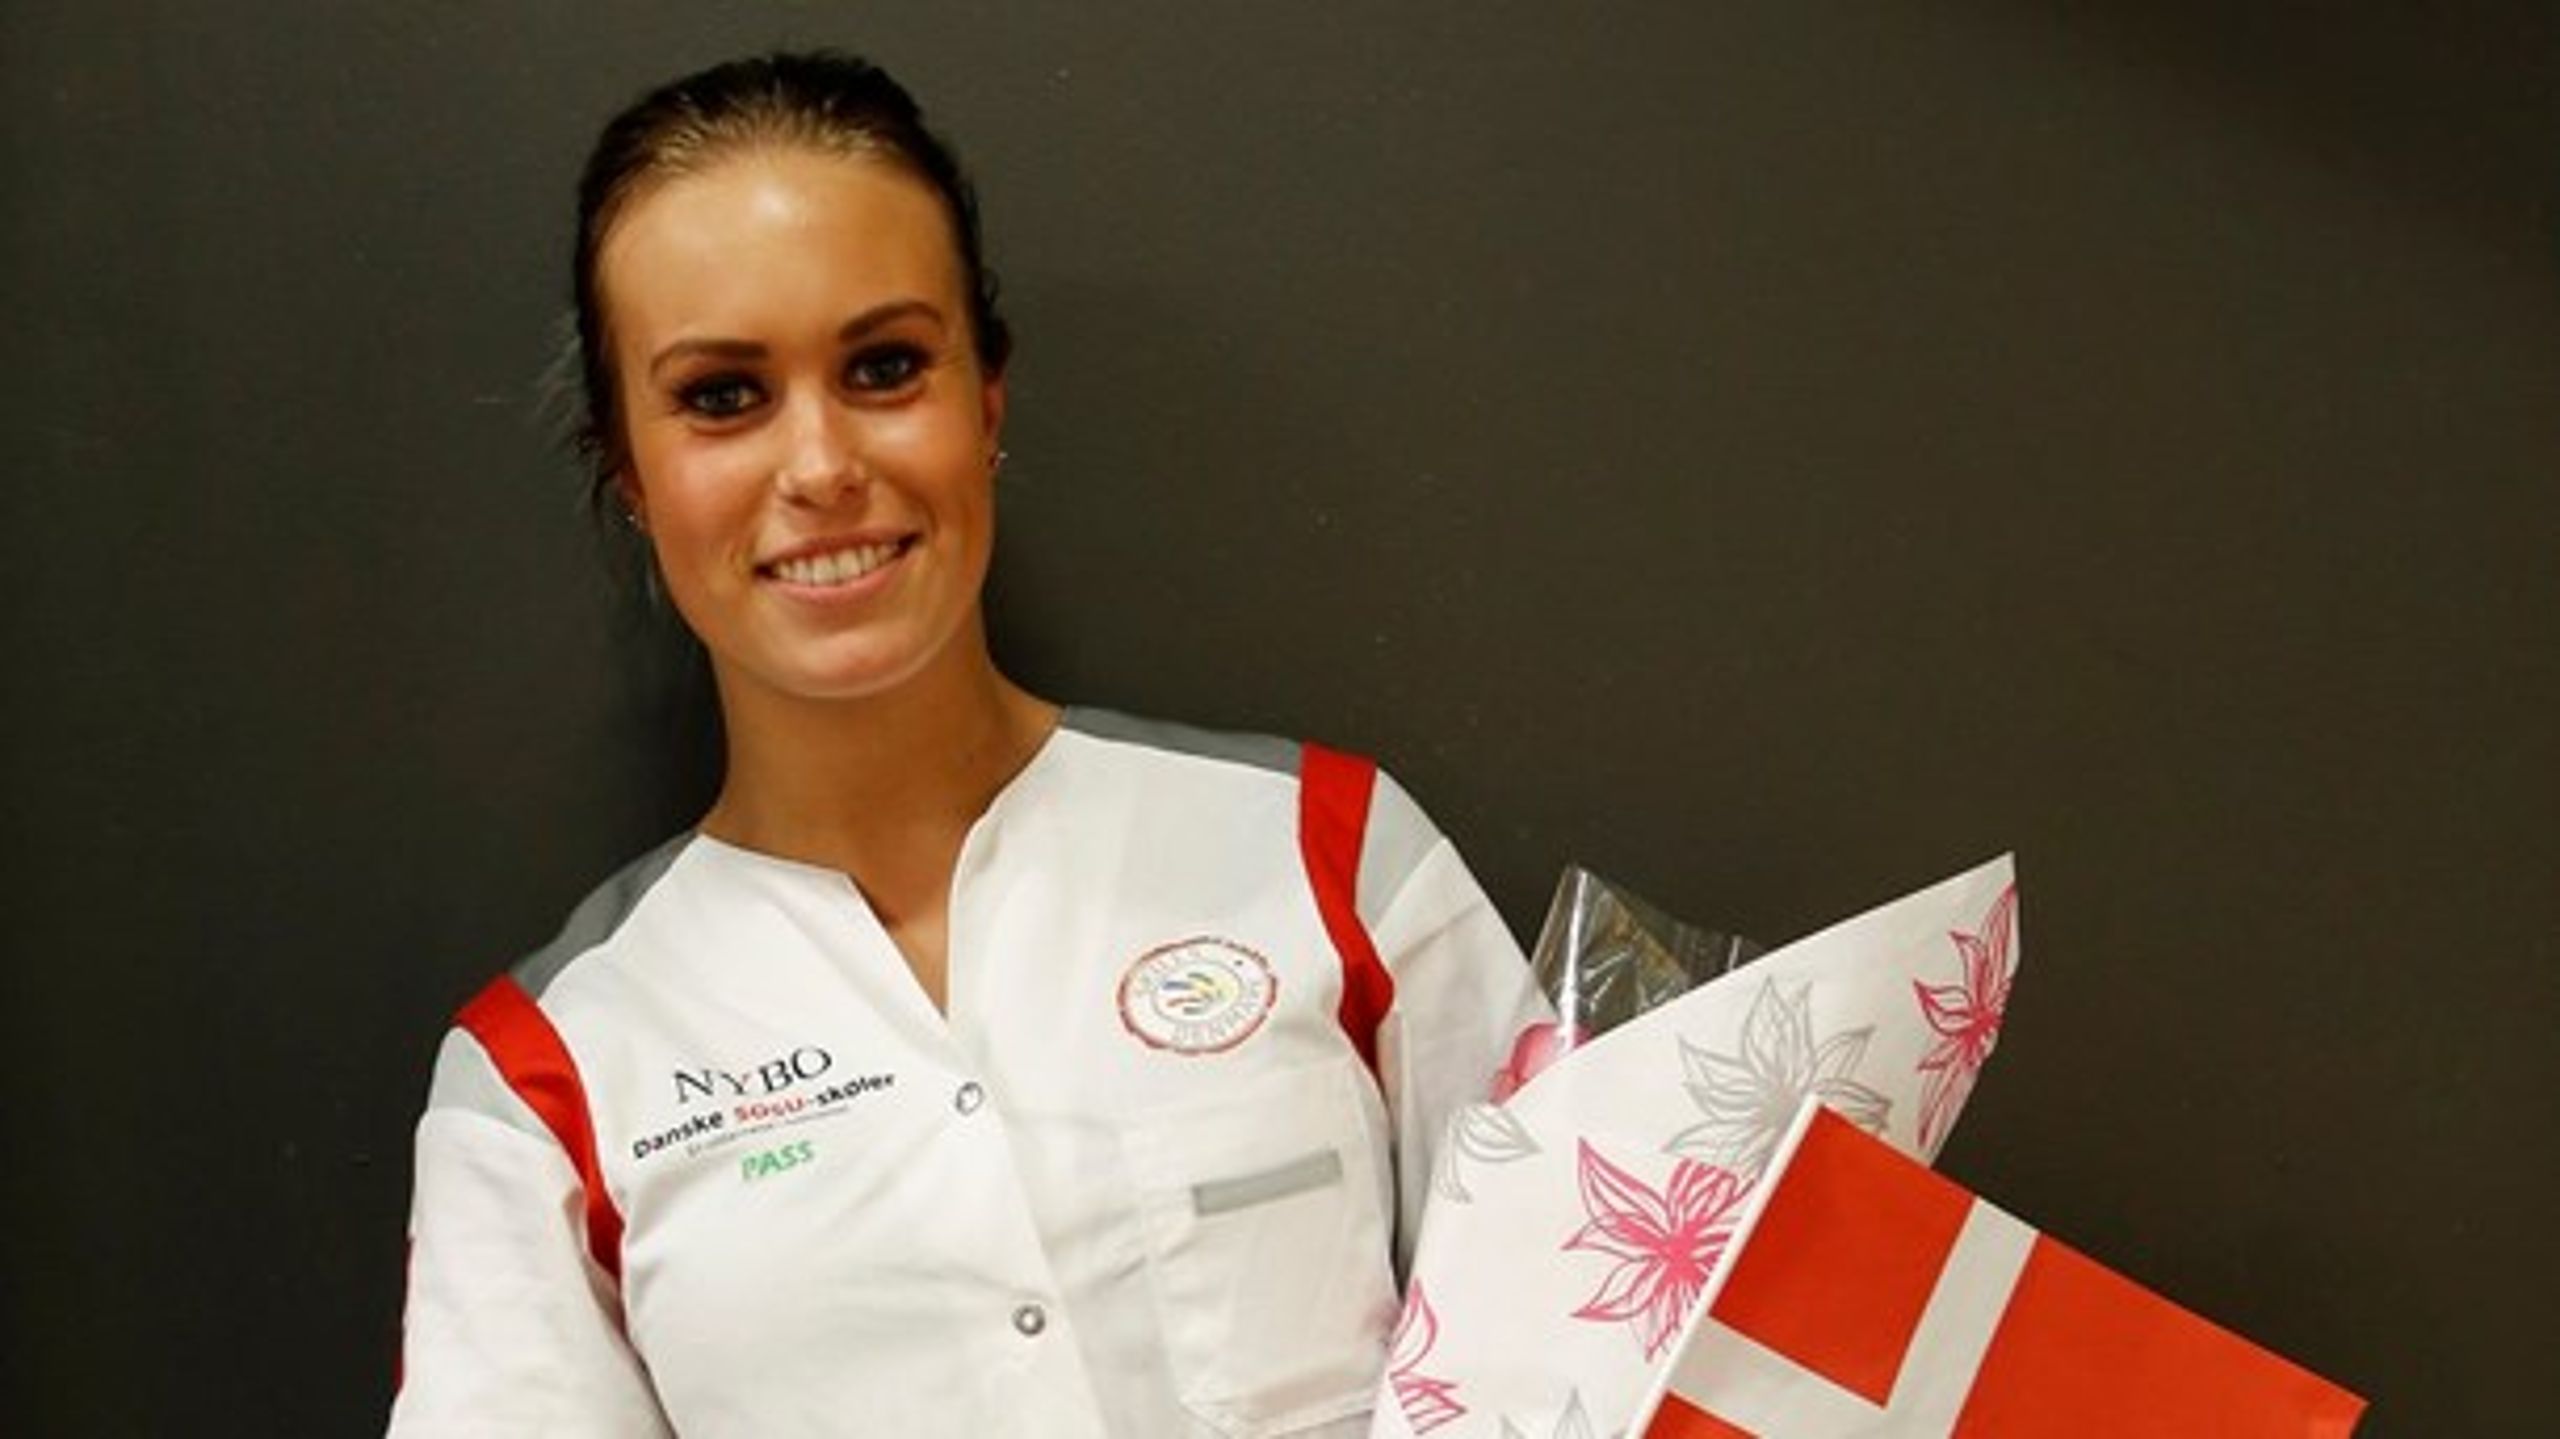 Olivia Rohde Olsen er stolt af sit fag og var med til at sætte Danmark på landkortet under Euroskills i Sverige.